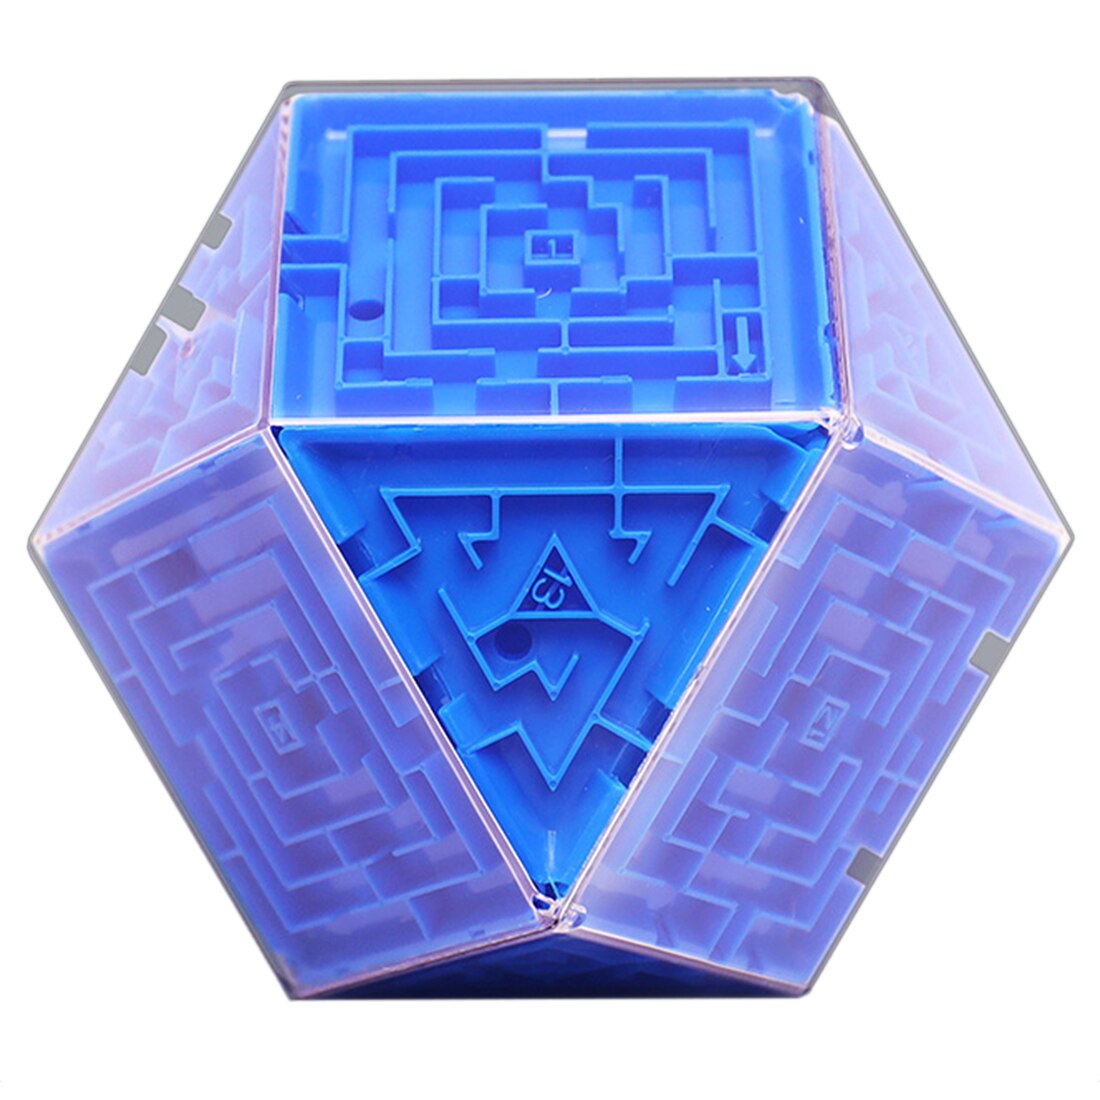 3d labyrint terning intelligent legetøj labyrint bold legetøj labyrint boldspil læring pædagogisk legetøj tetraeder kunst farverig l: Blå